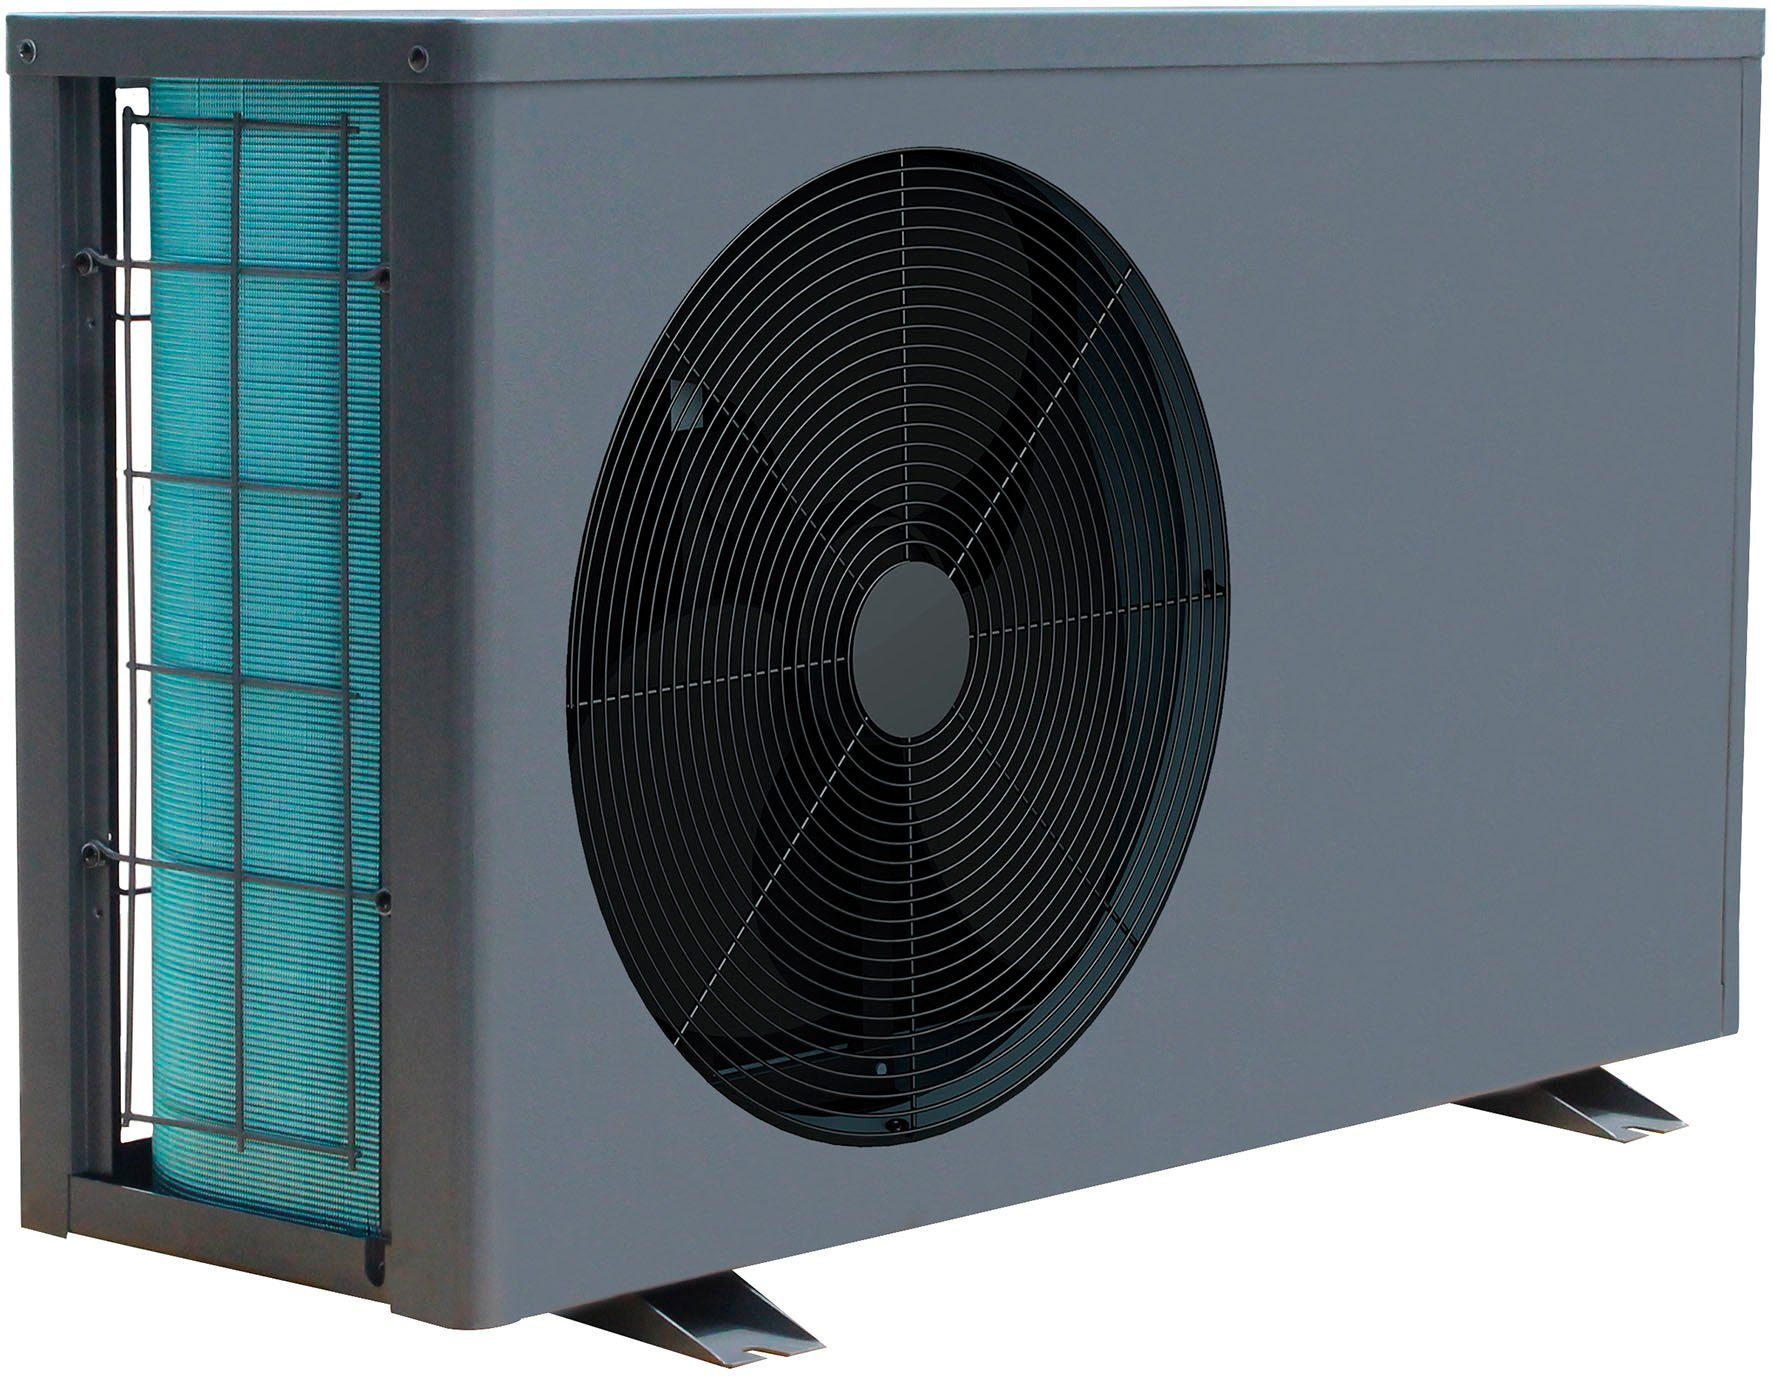 Ubbink Pool-Wärmepumpe Heatermax Inverter 40, 3 Betriebsarten: Silent-, Smart- und Power Mode